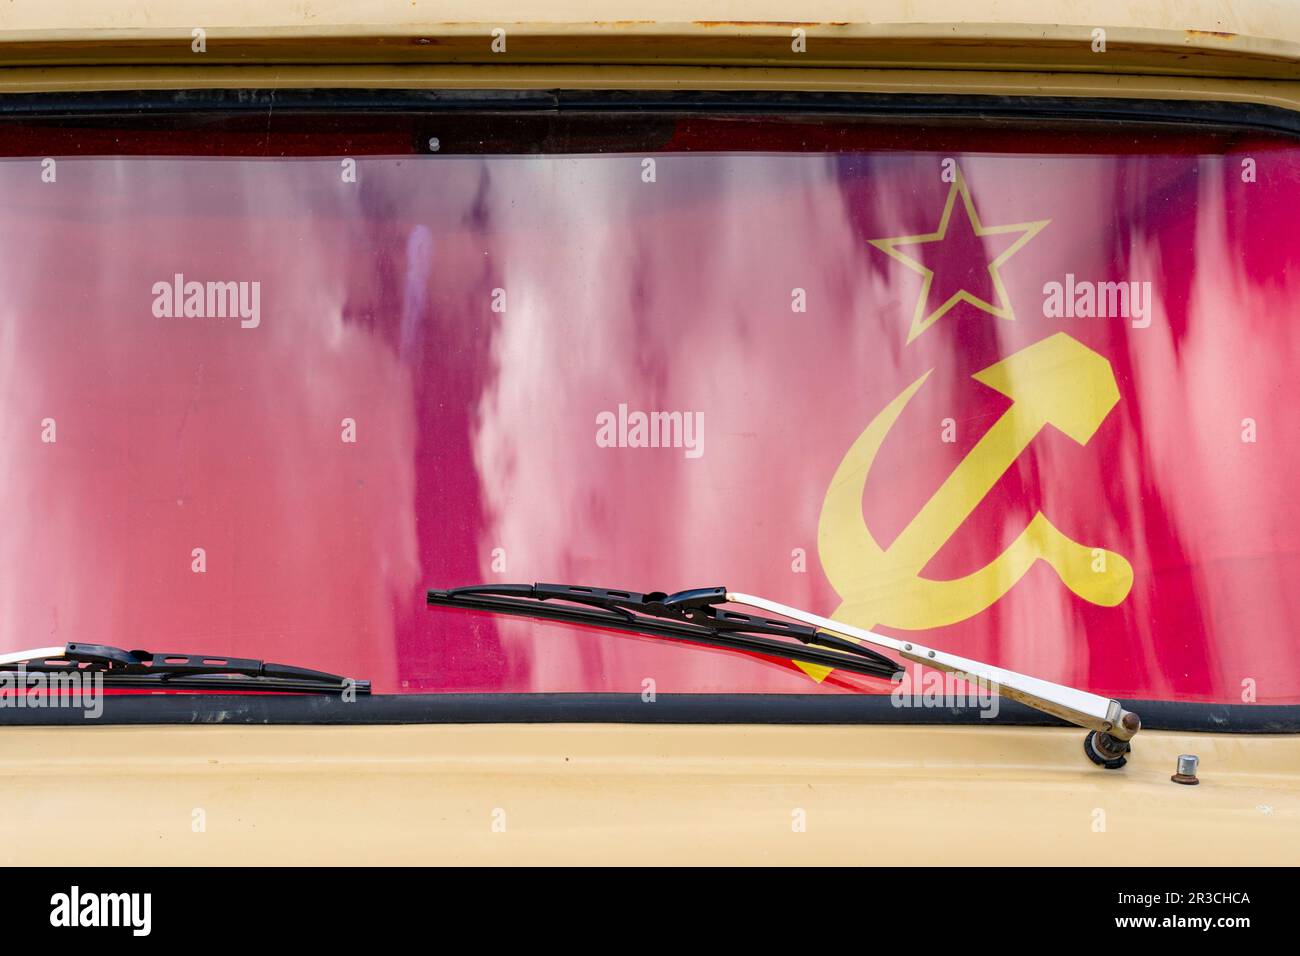 Voiture d'europe de l'est avec drapeau soviétique sur le pare-brise Banque D'Images